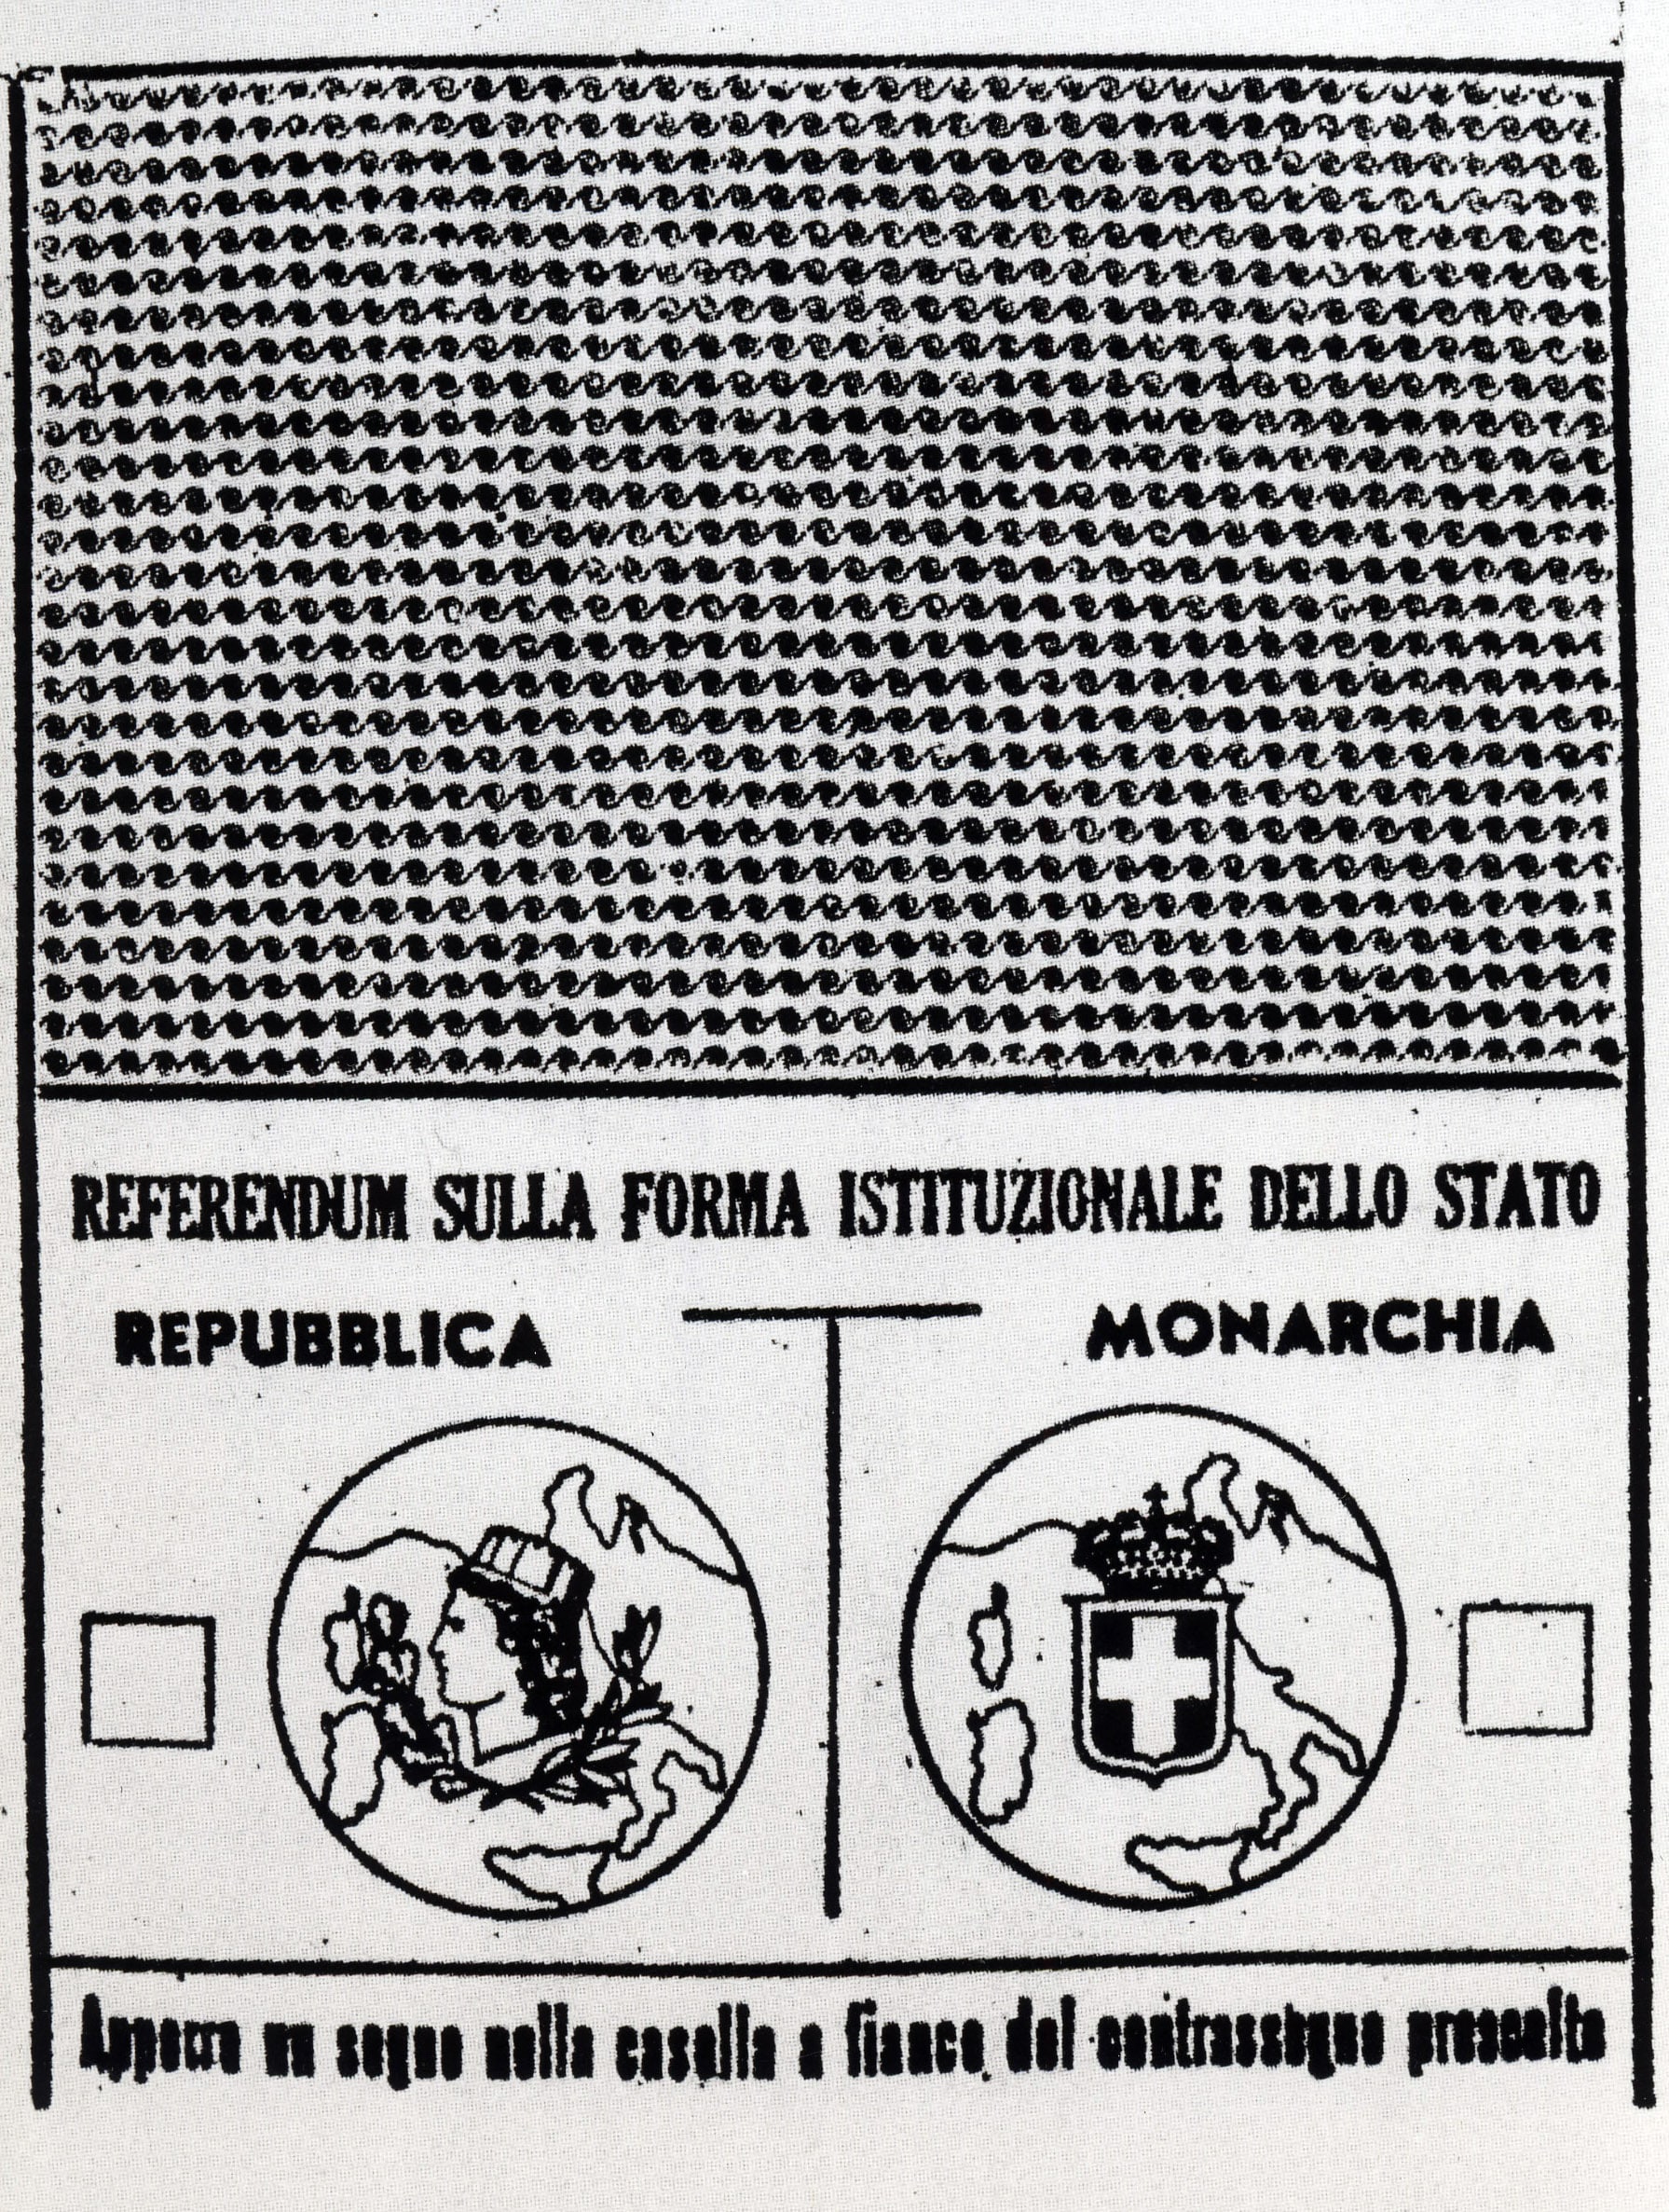 Scheda elettorale del referendum istituzionale per decidere tra Monarchia e Repubblica